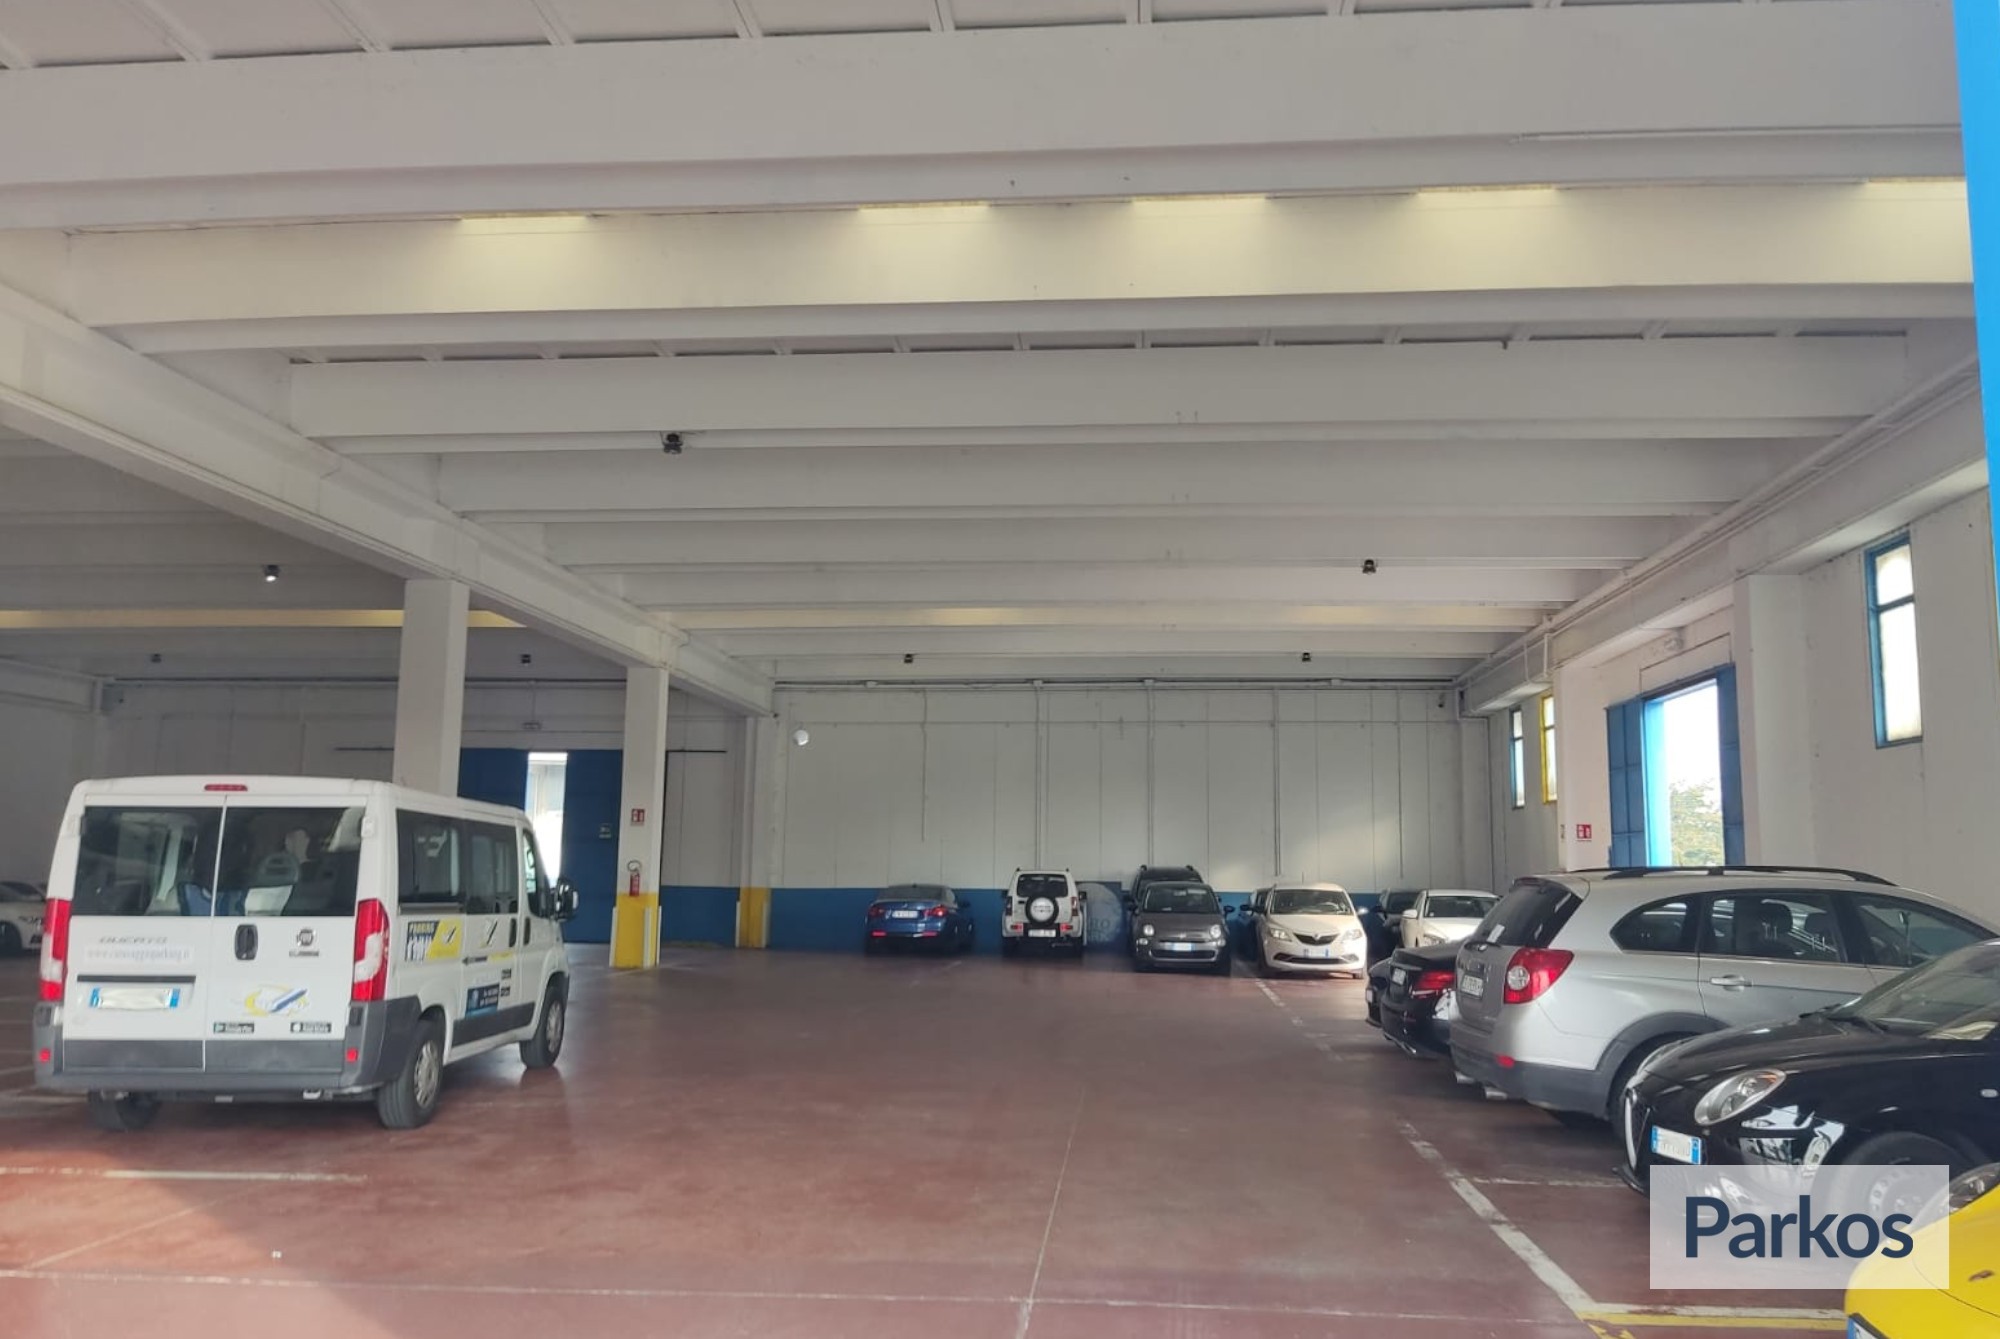 Azzurro Caravaggio Parking (Paga online) - Parcheggio Orio al Serio - picture 1